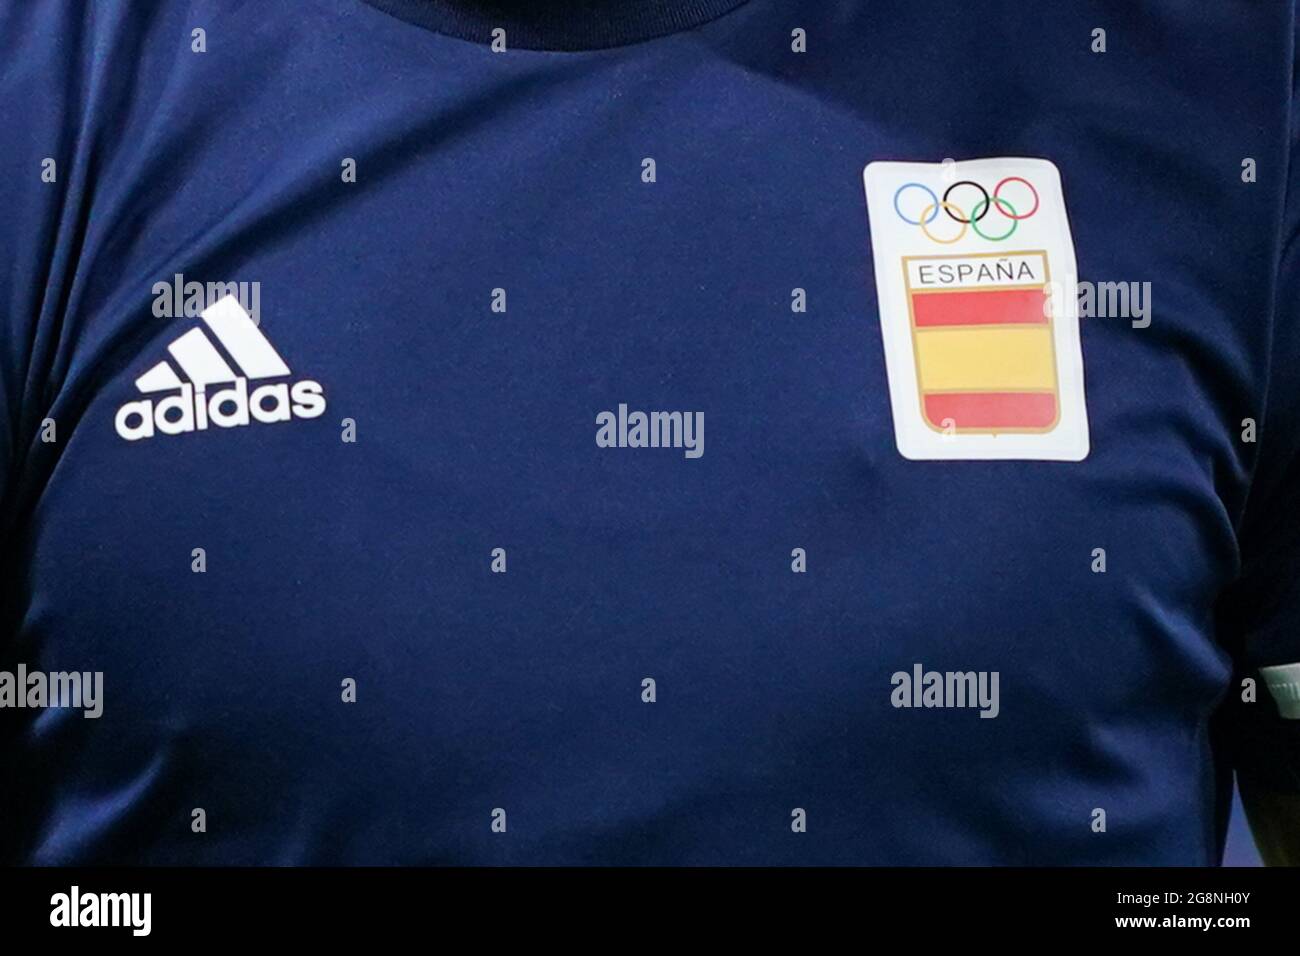 Sapporo, Giappone. 22 luglio 2021. Maglia della squadra Spagna con il logo  Olimpico e il loro sponsor Adidas durante il torneo olimpico di calcio  maschile Tokyo 2020 partita tra Egitto e Spagna